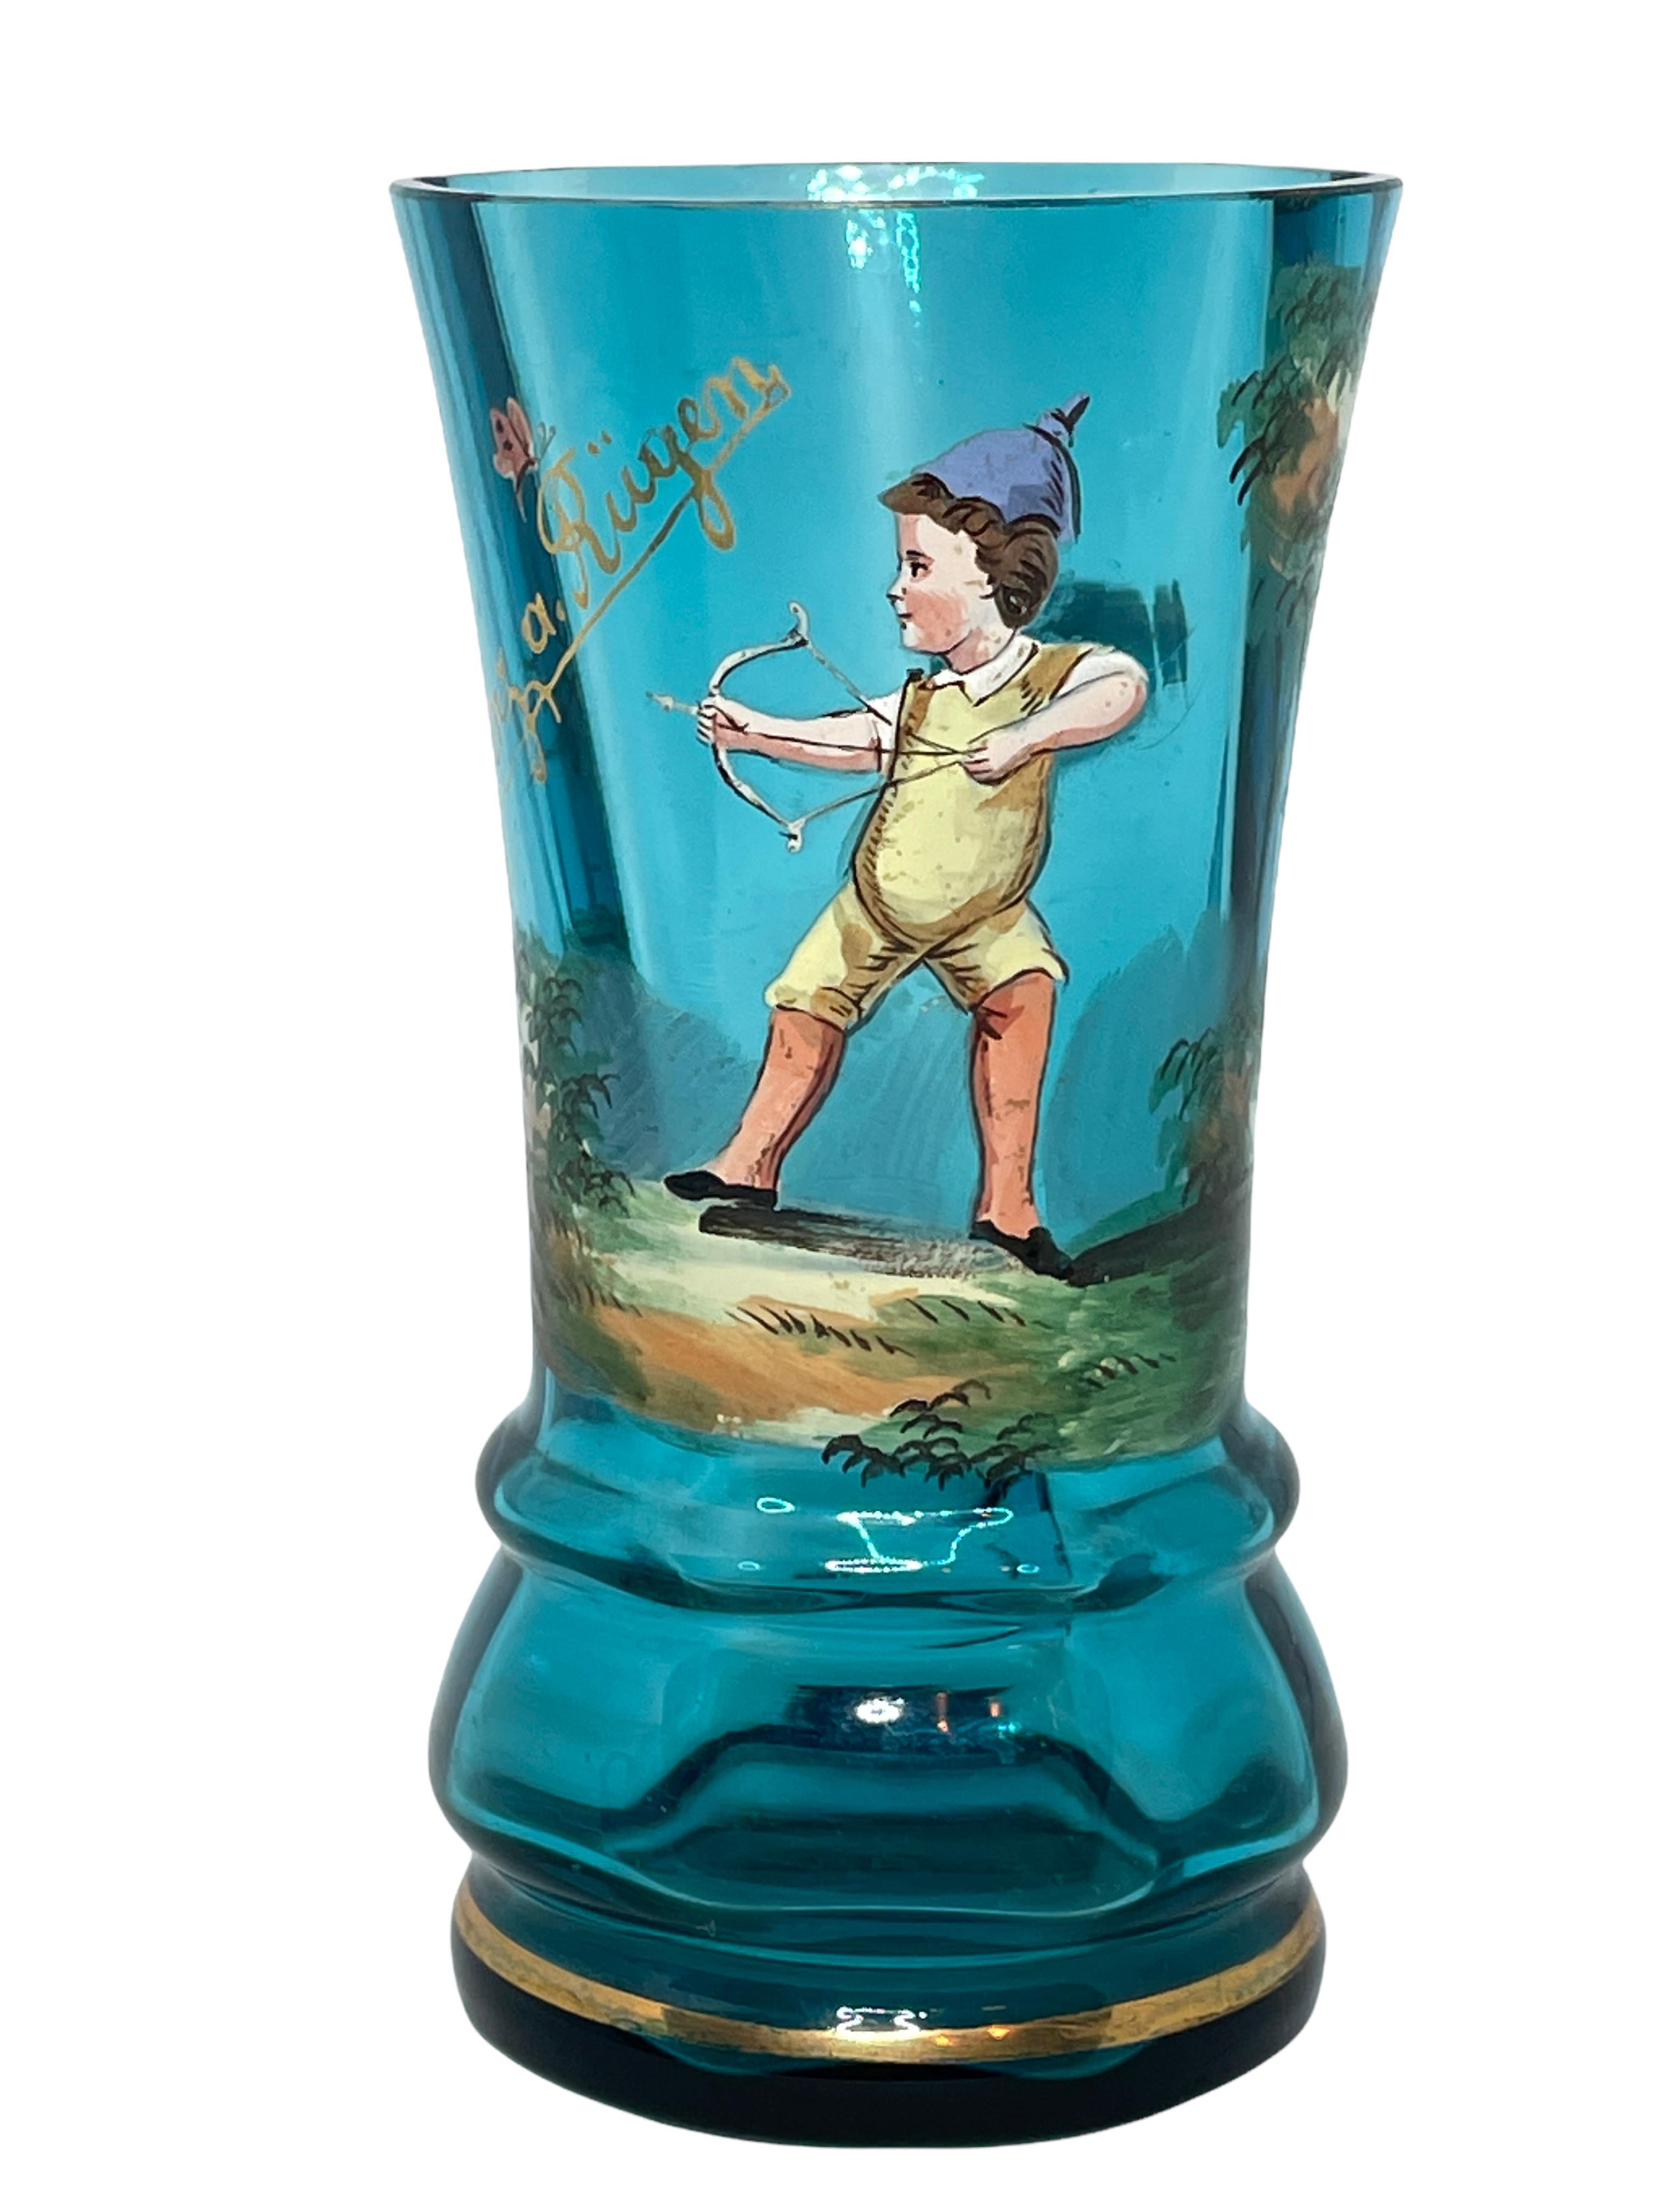 Merveilleux verre allemand ancien. Ce magnifique verre de couleur bleue et peint à l'émail apporte une touche d'opulence à toute collection de verres Mary Gregory. Une belle addition à n'importe quelle pièce ou table.

 